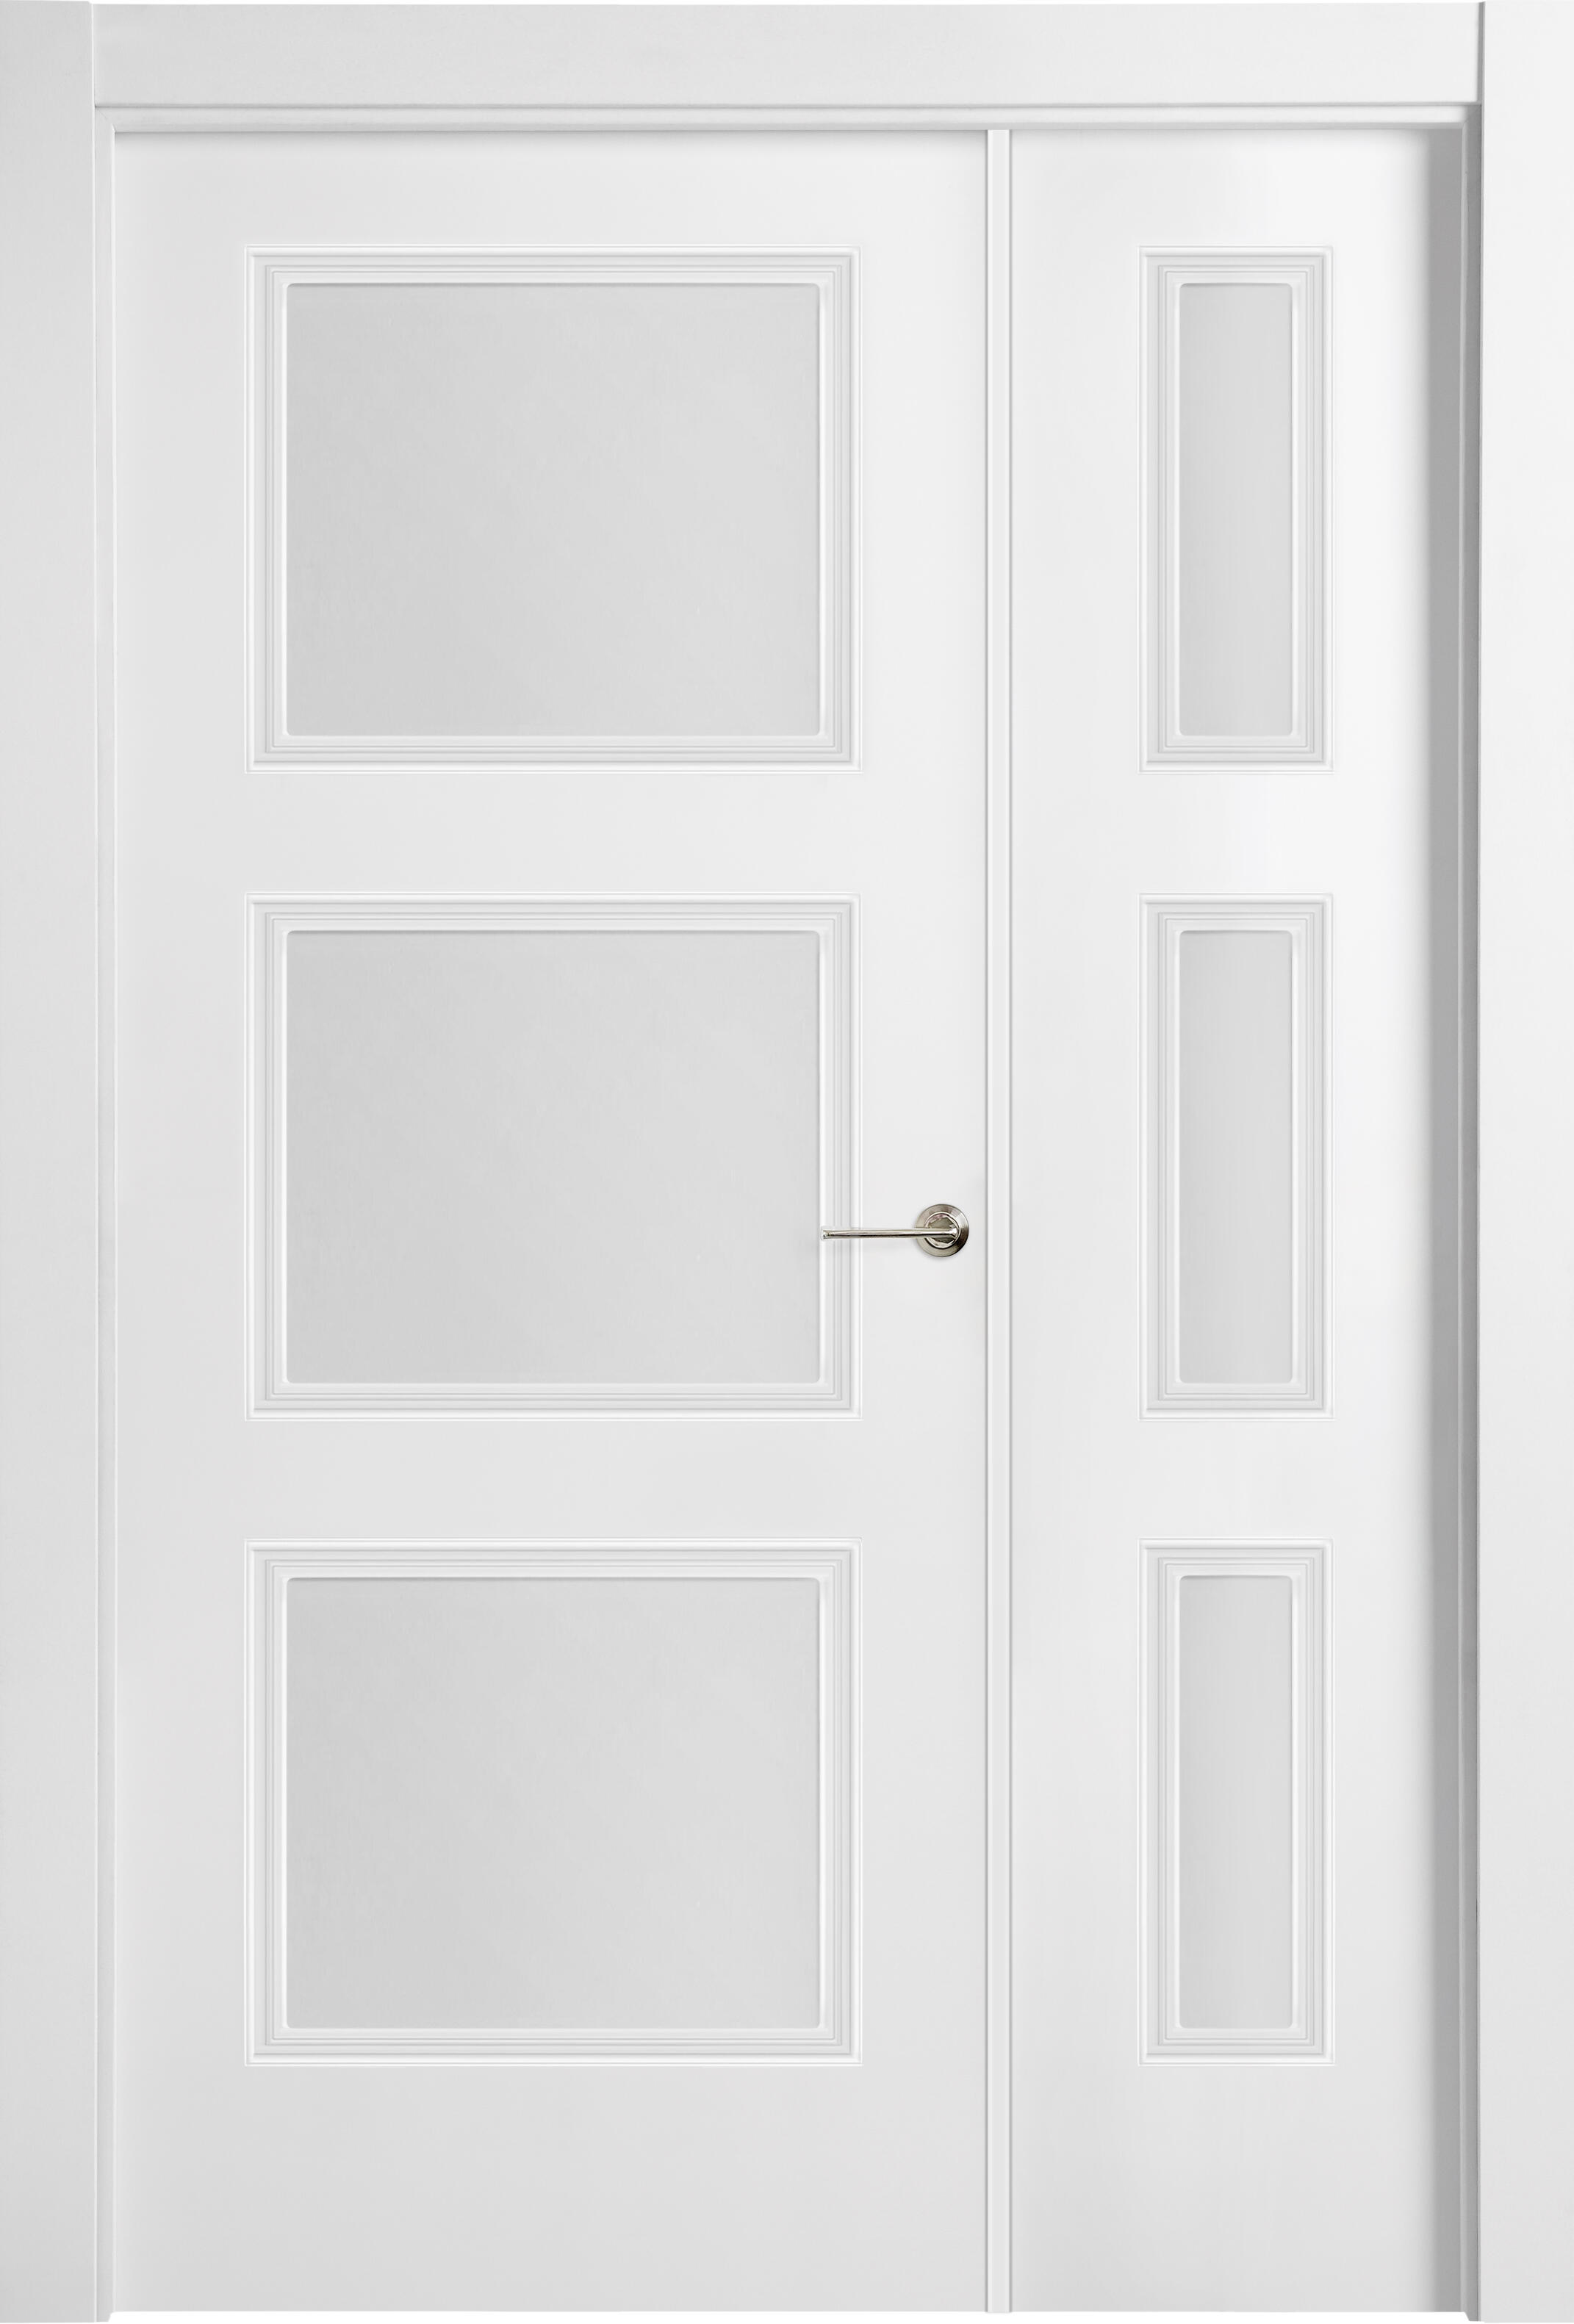 Puerta abatible monaco blanca line plus con cristal blanco derecha de 105 cm